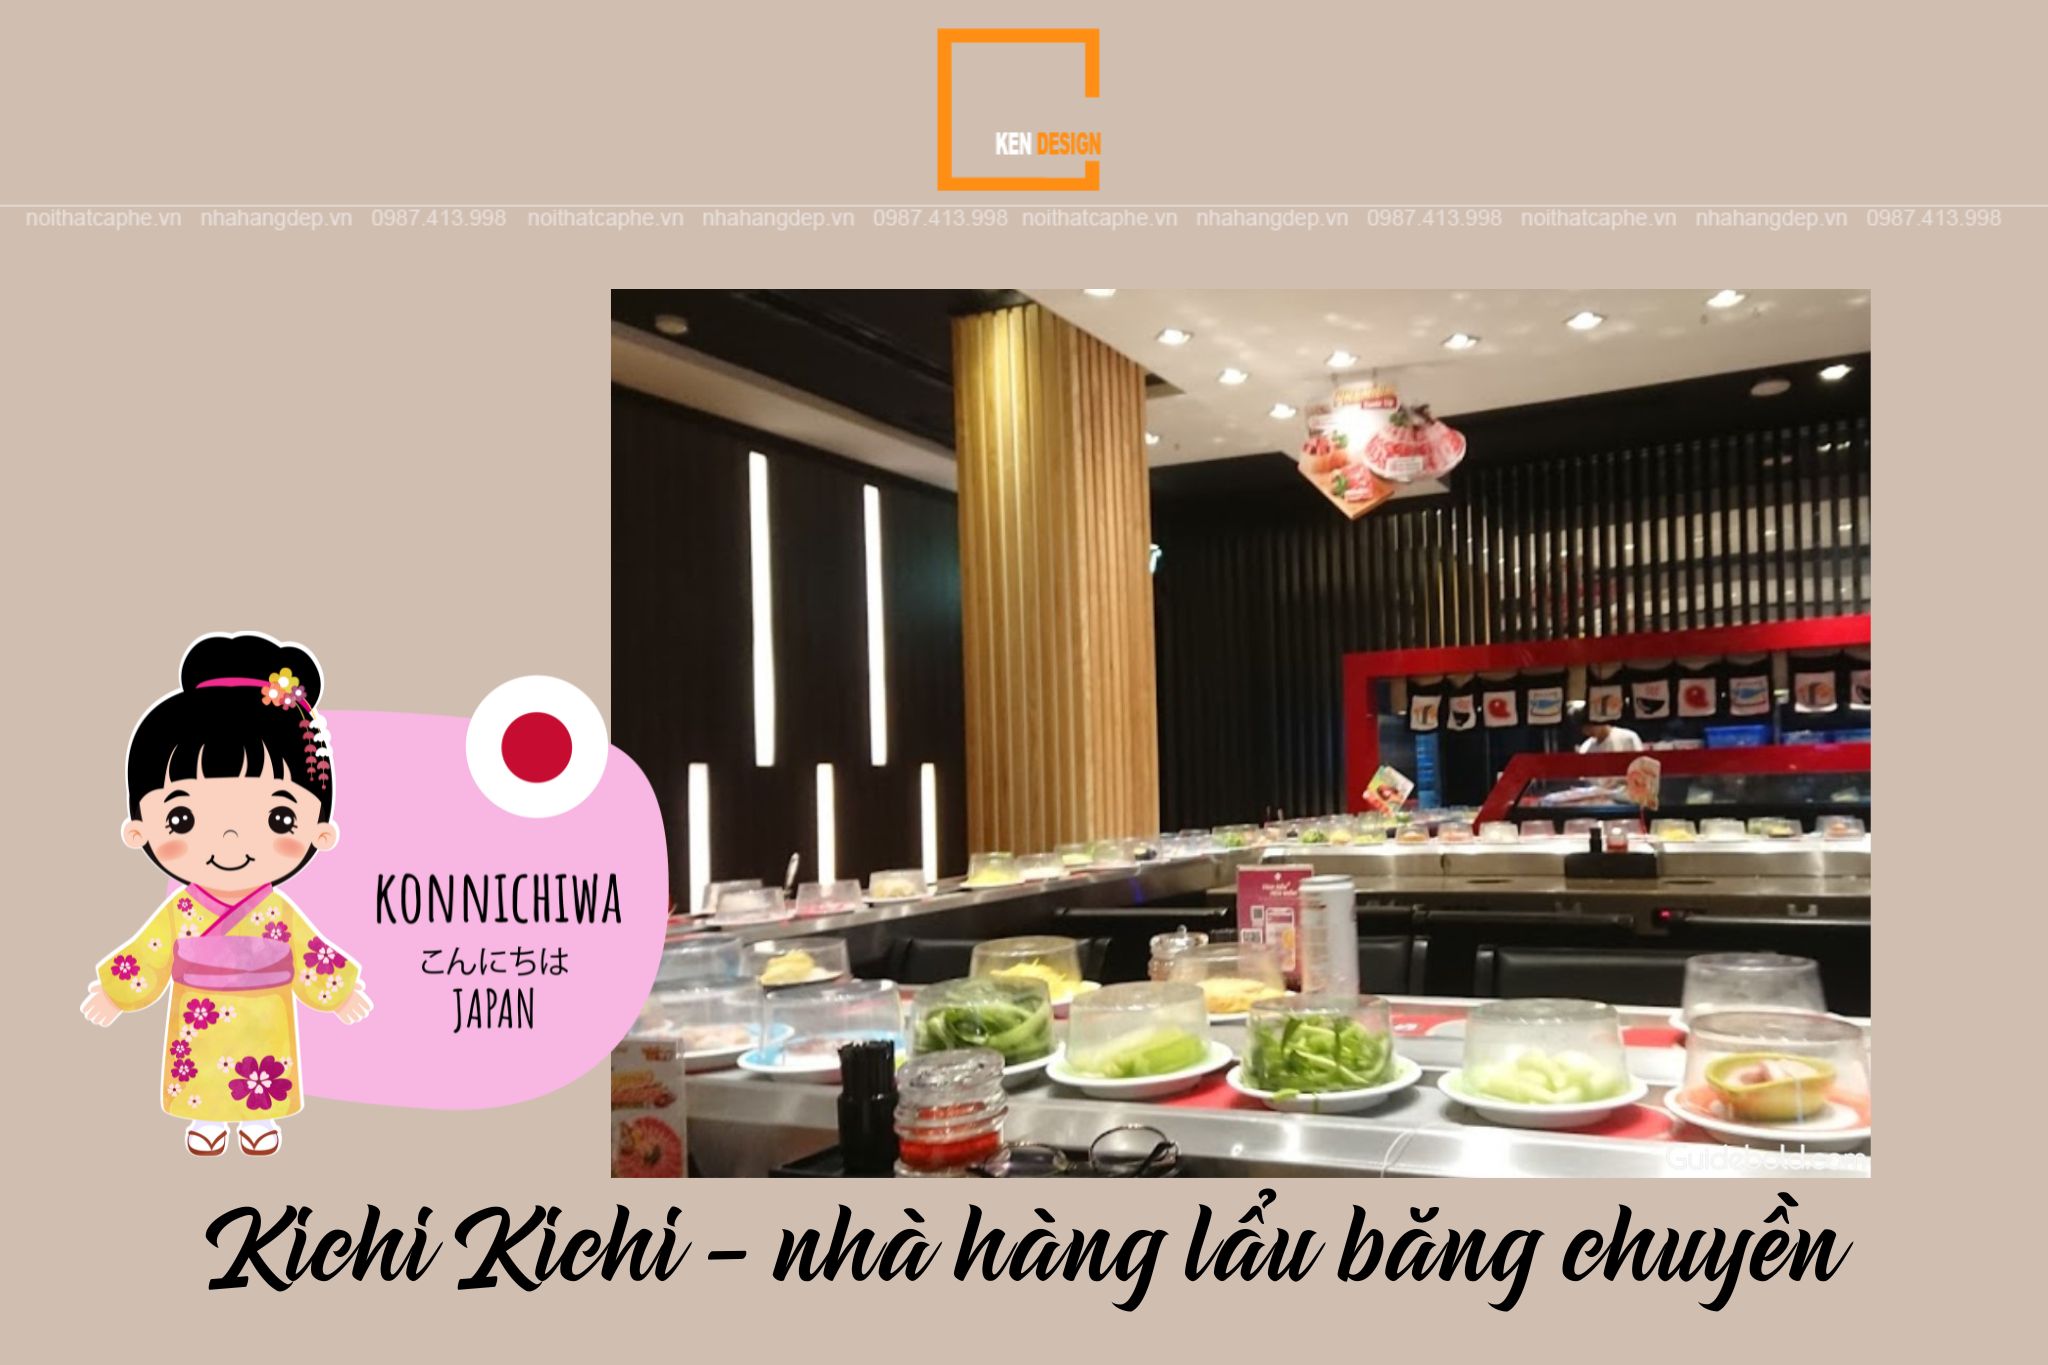 Kichi Kichi Lẩu Băng Chuyền Phú Mỹ Hưng, buffet lẩu hải sản ở TP. HCM |  Foody.vn